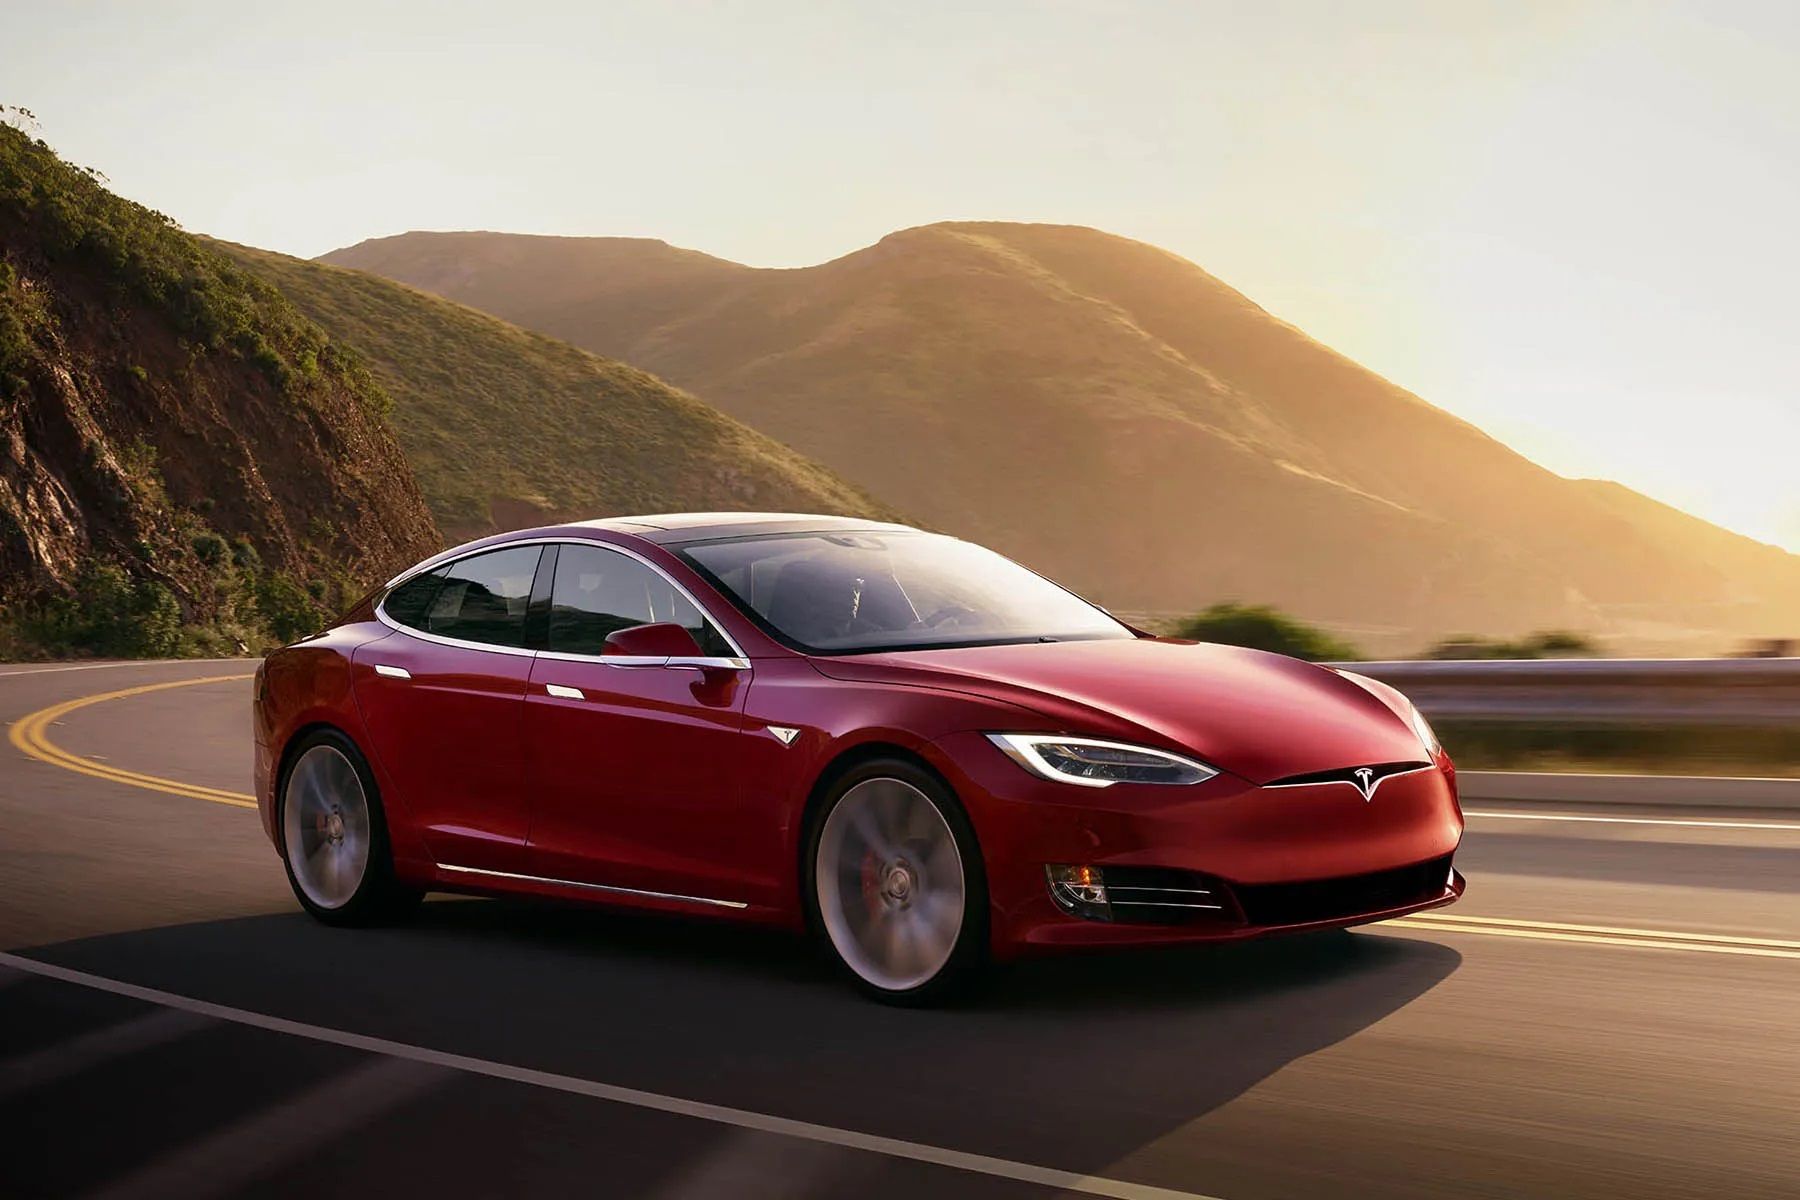 Tesla Model S on the highway